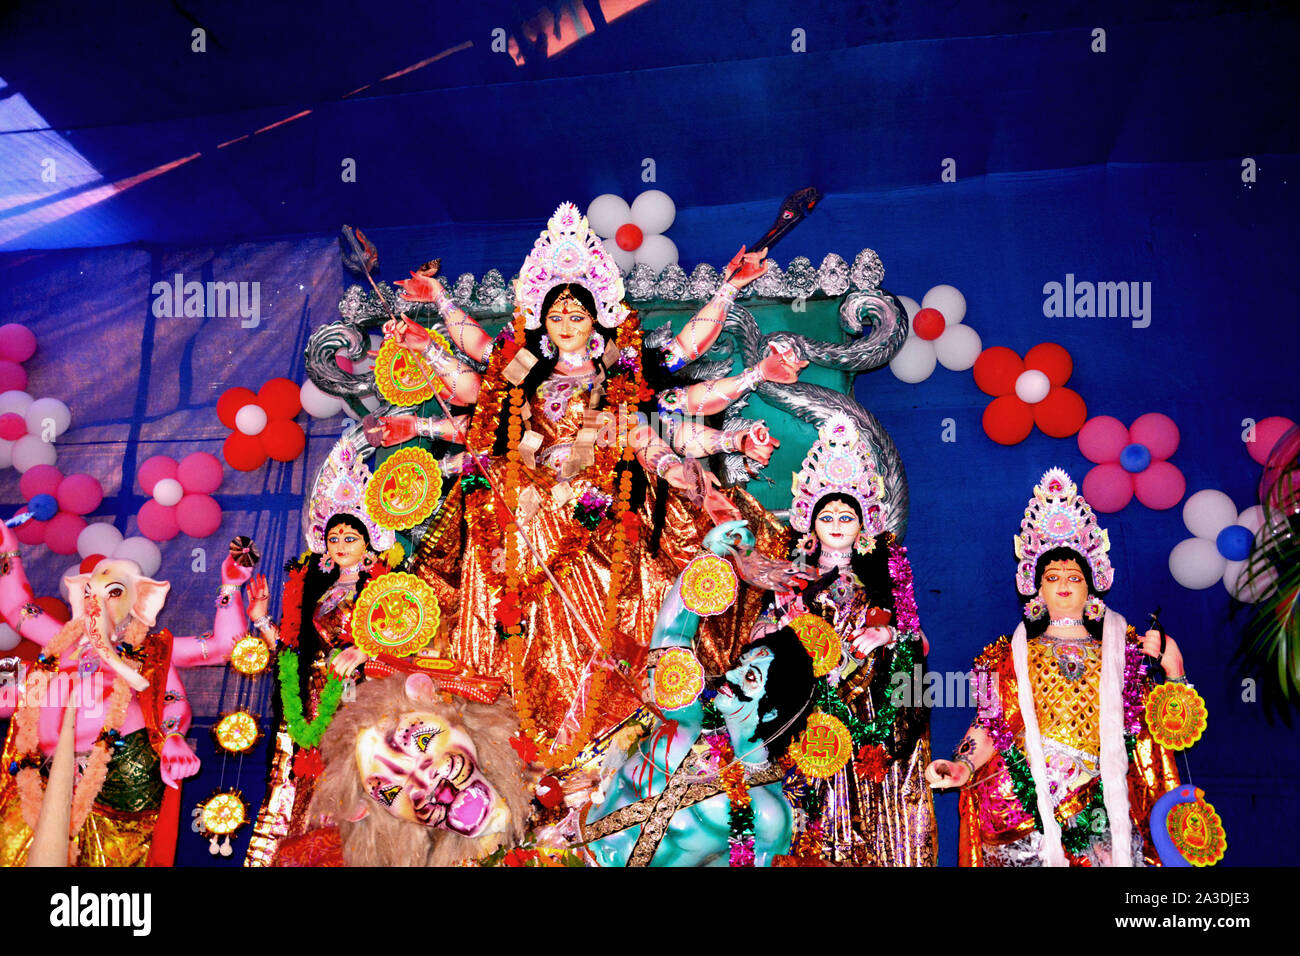 Göttin Durga Idol an Durga Puja Pandal im Dorf der ländlichen Westbengalen das größte religiöse Fest der Menschen von West Bengal oder bengalis eingerichtet Stockfoto